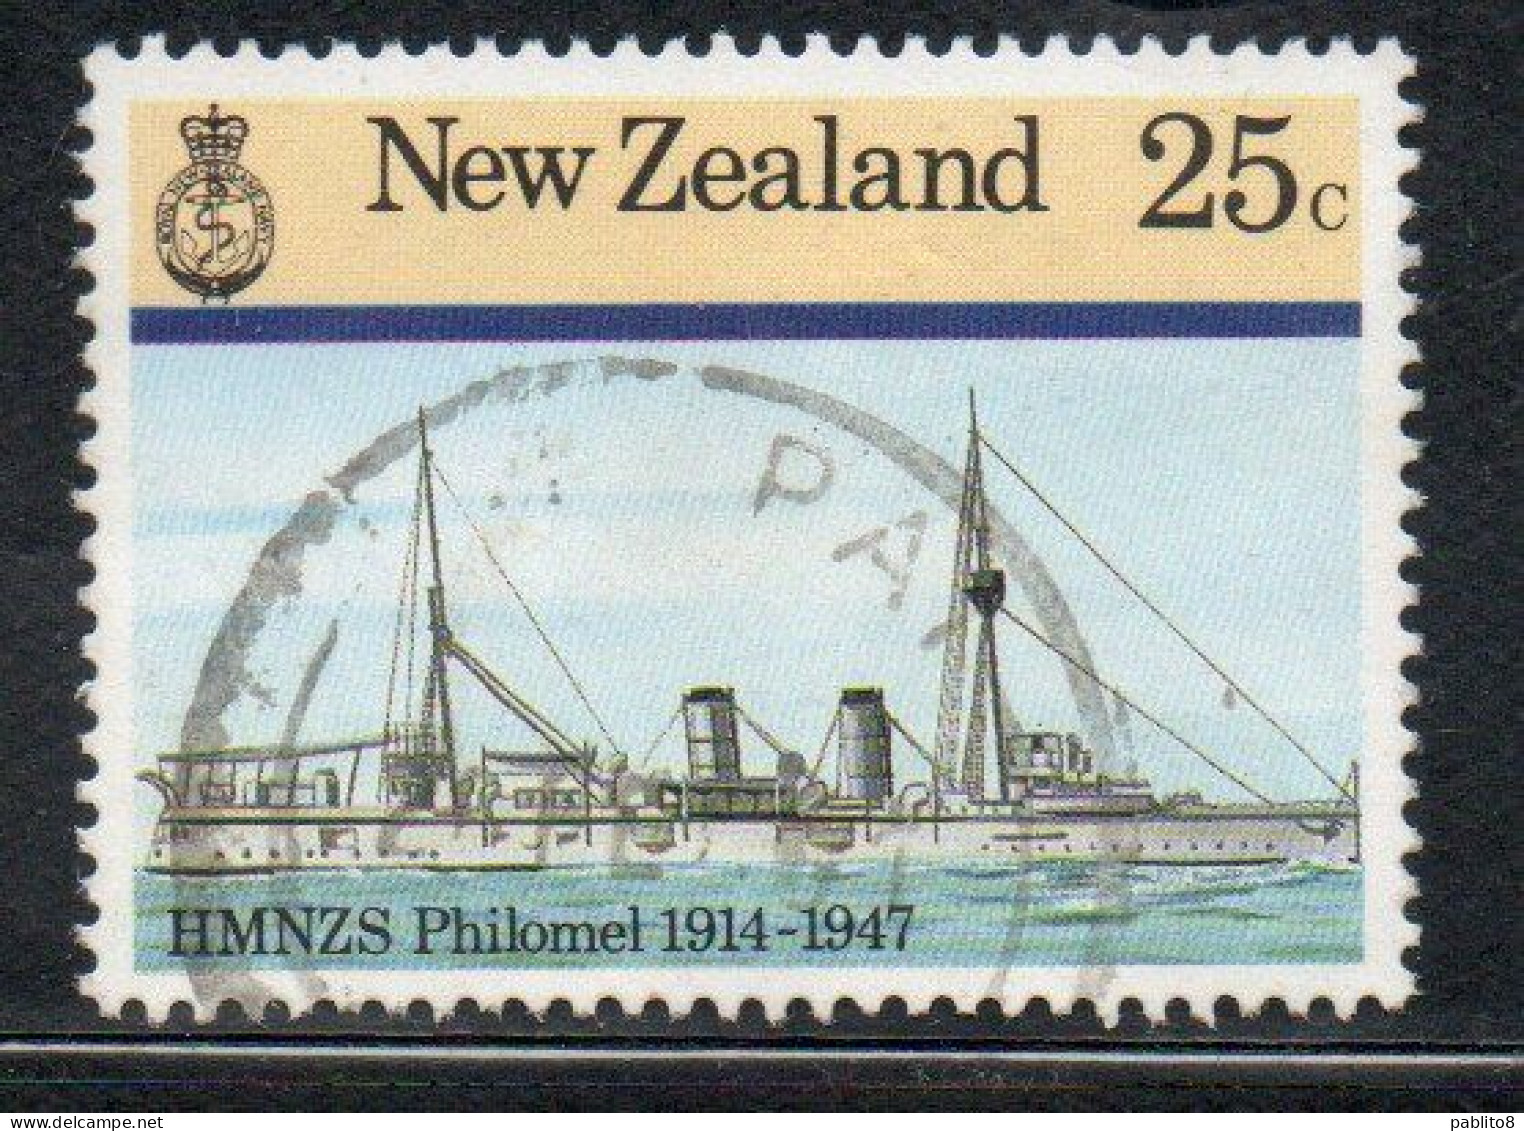 NEW ZEALAND NUOVA ZELANDA 1985 NAVY SHIPS HMNZS PHILOMEL 1914 1947  25c USED USATO OBLITERE' - Oblitérés